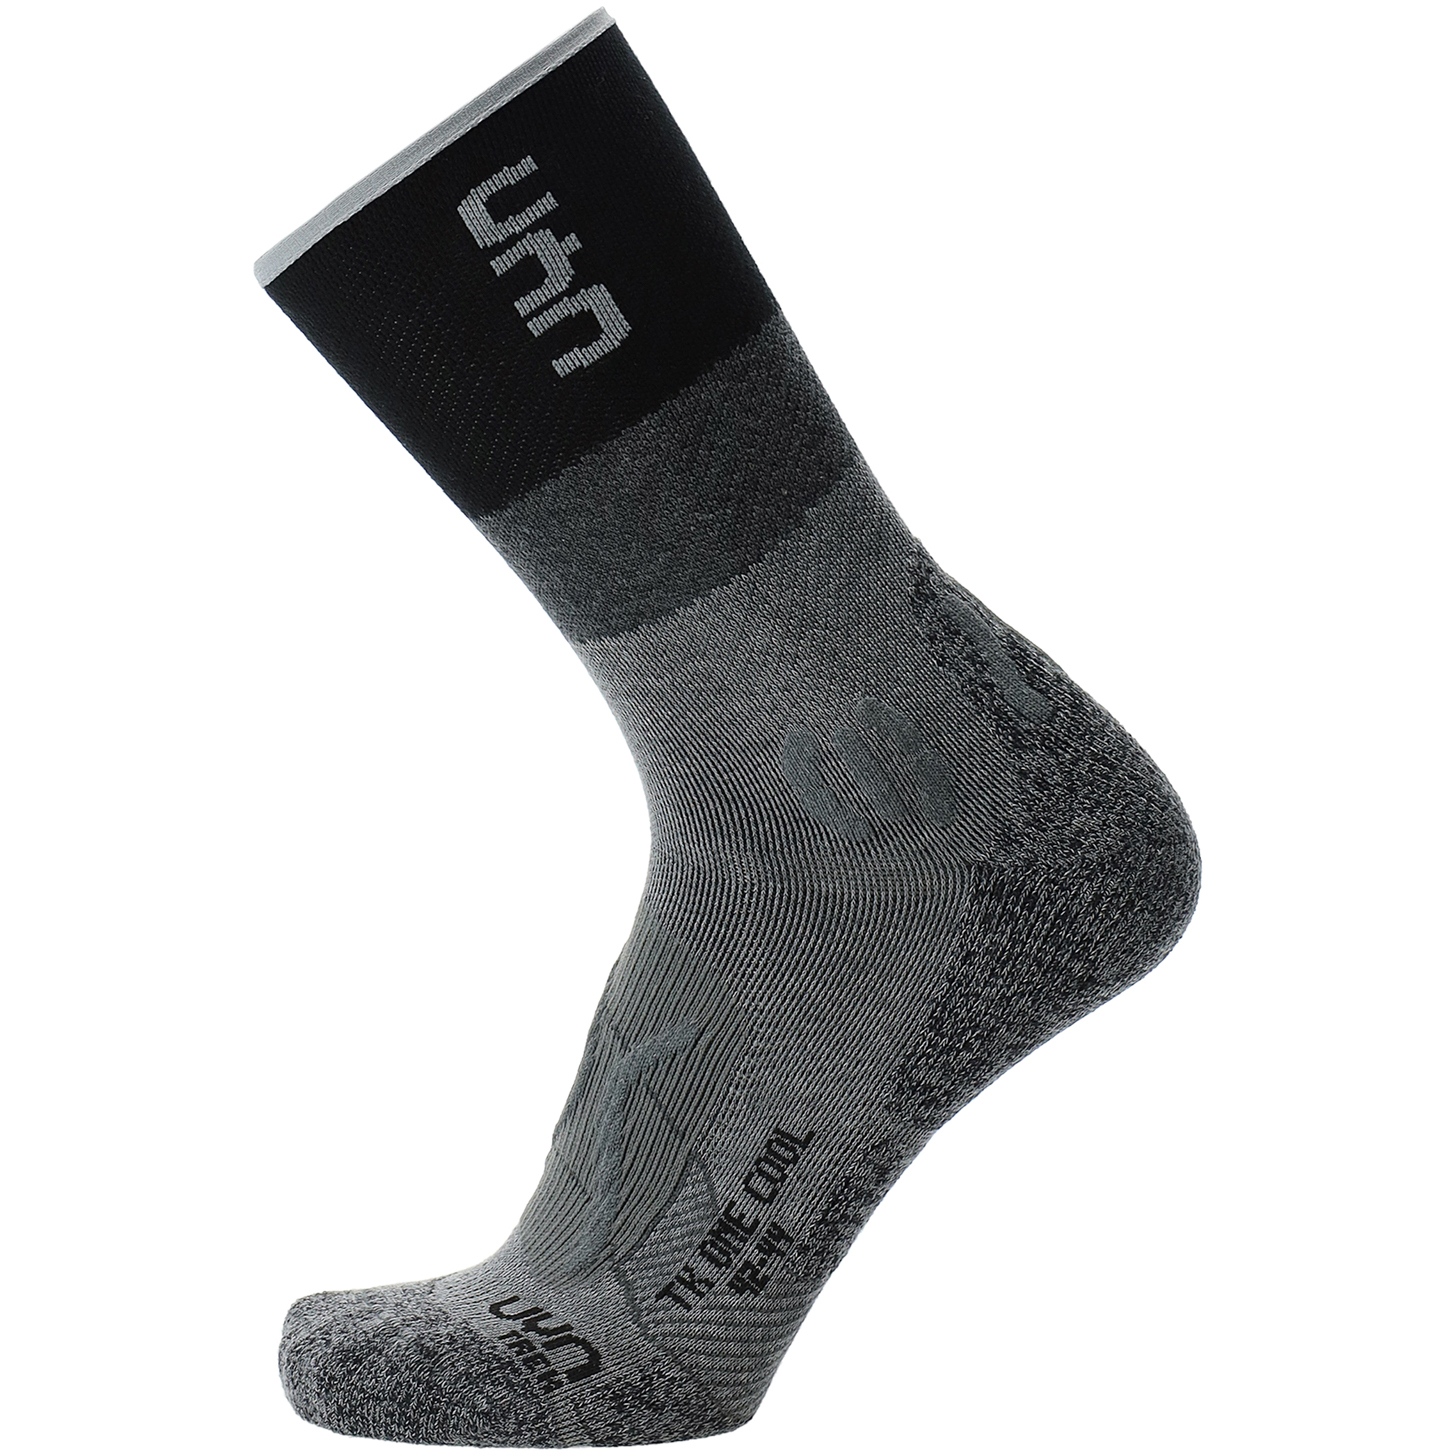 Produktbild von UYN Trekking One Cool Socken Herren - Grau/Schwarz